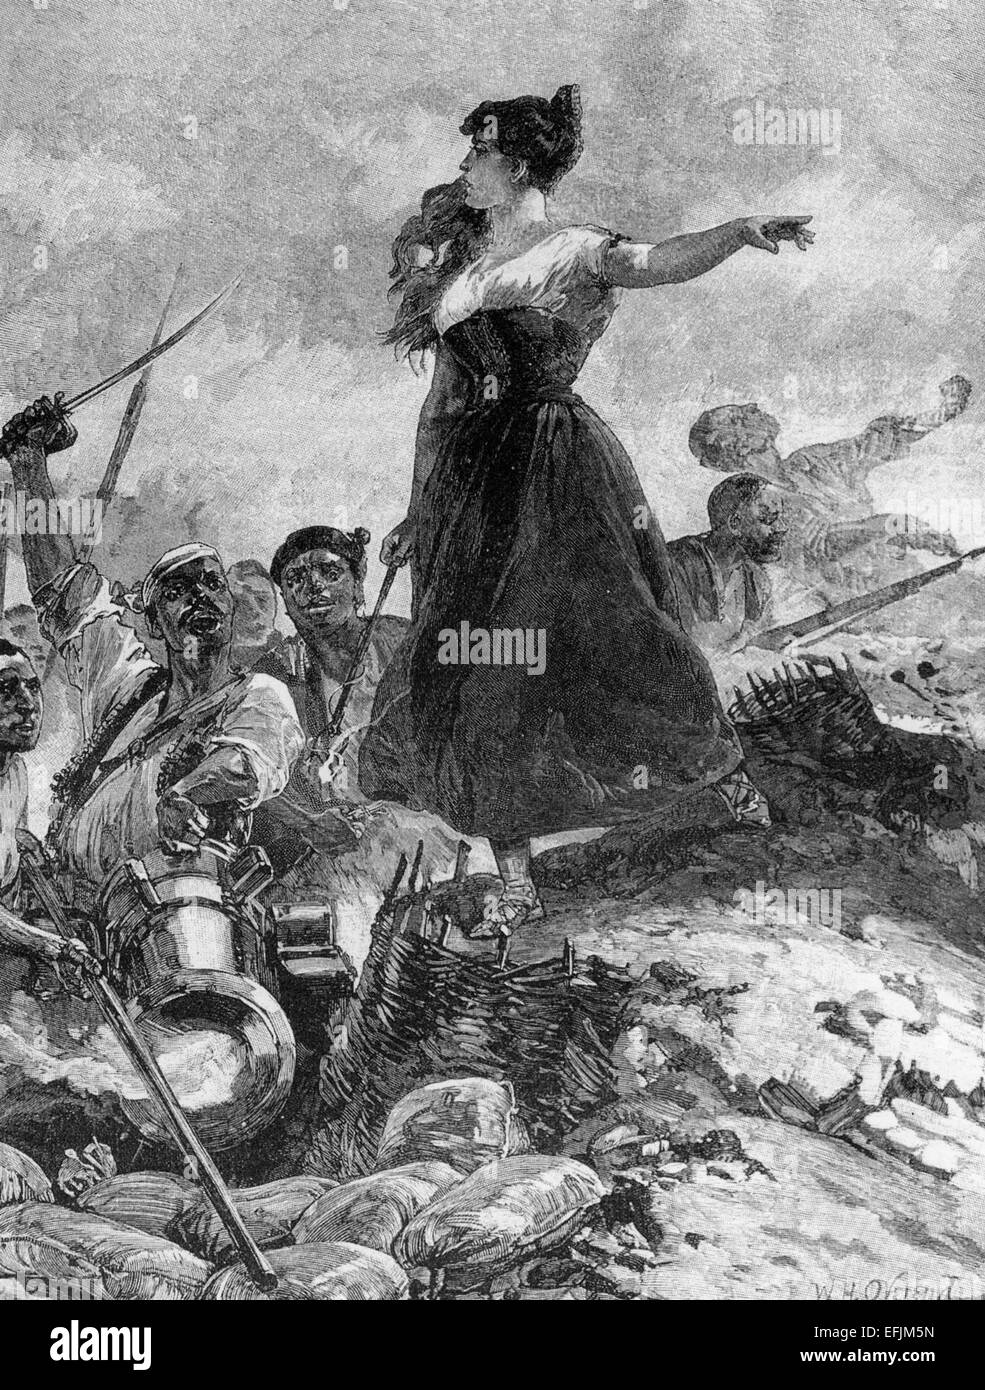 AGUSTINA de ARAGON (1786-1857) spanische Heldin bekannt als Magd von Saragossa während des spanischen Unabhängigkeitskrieges Stockfoto